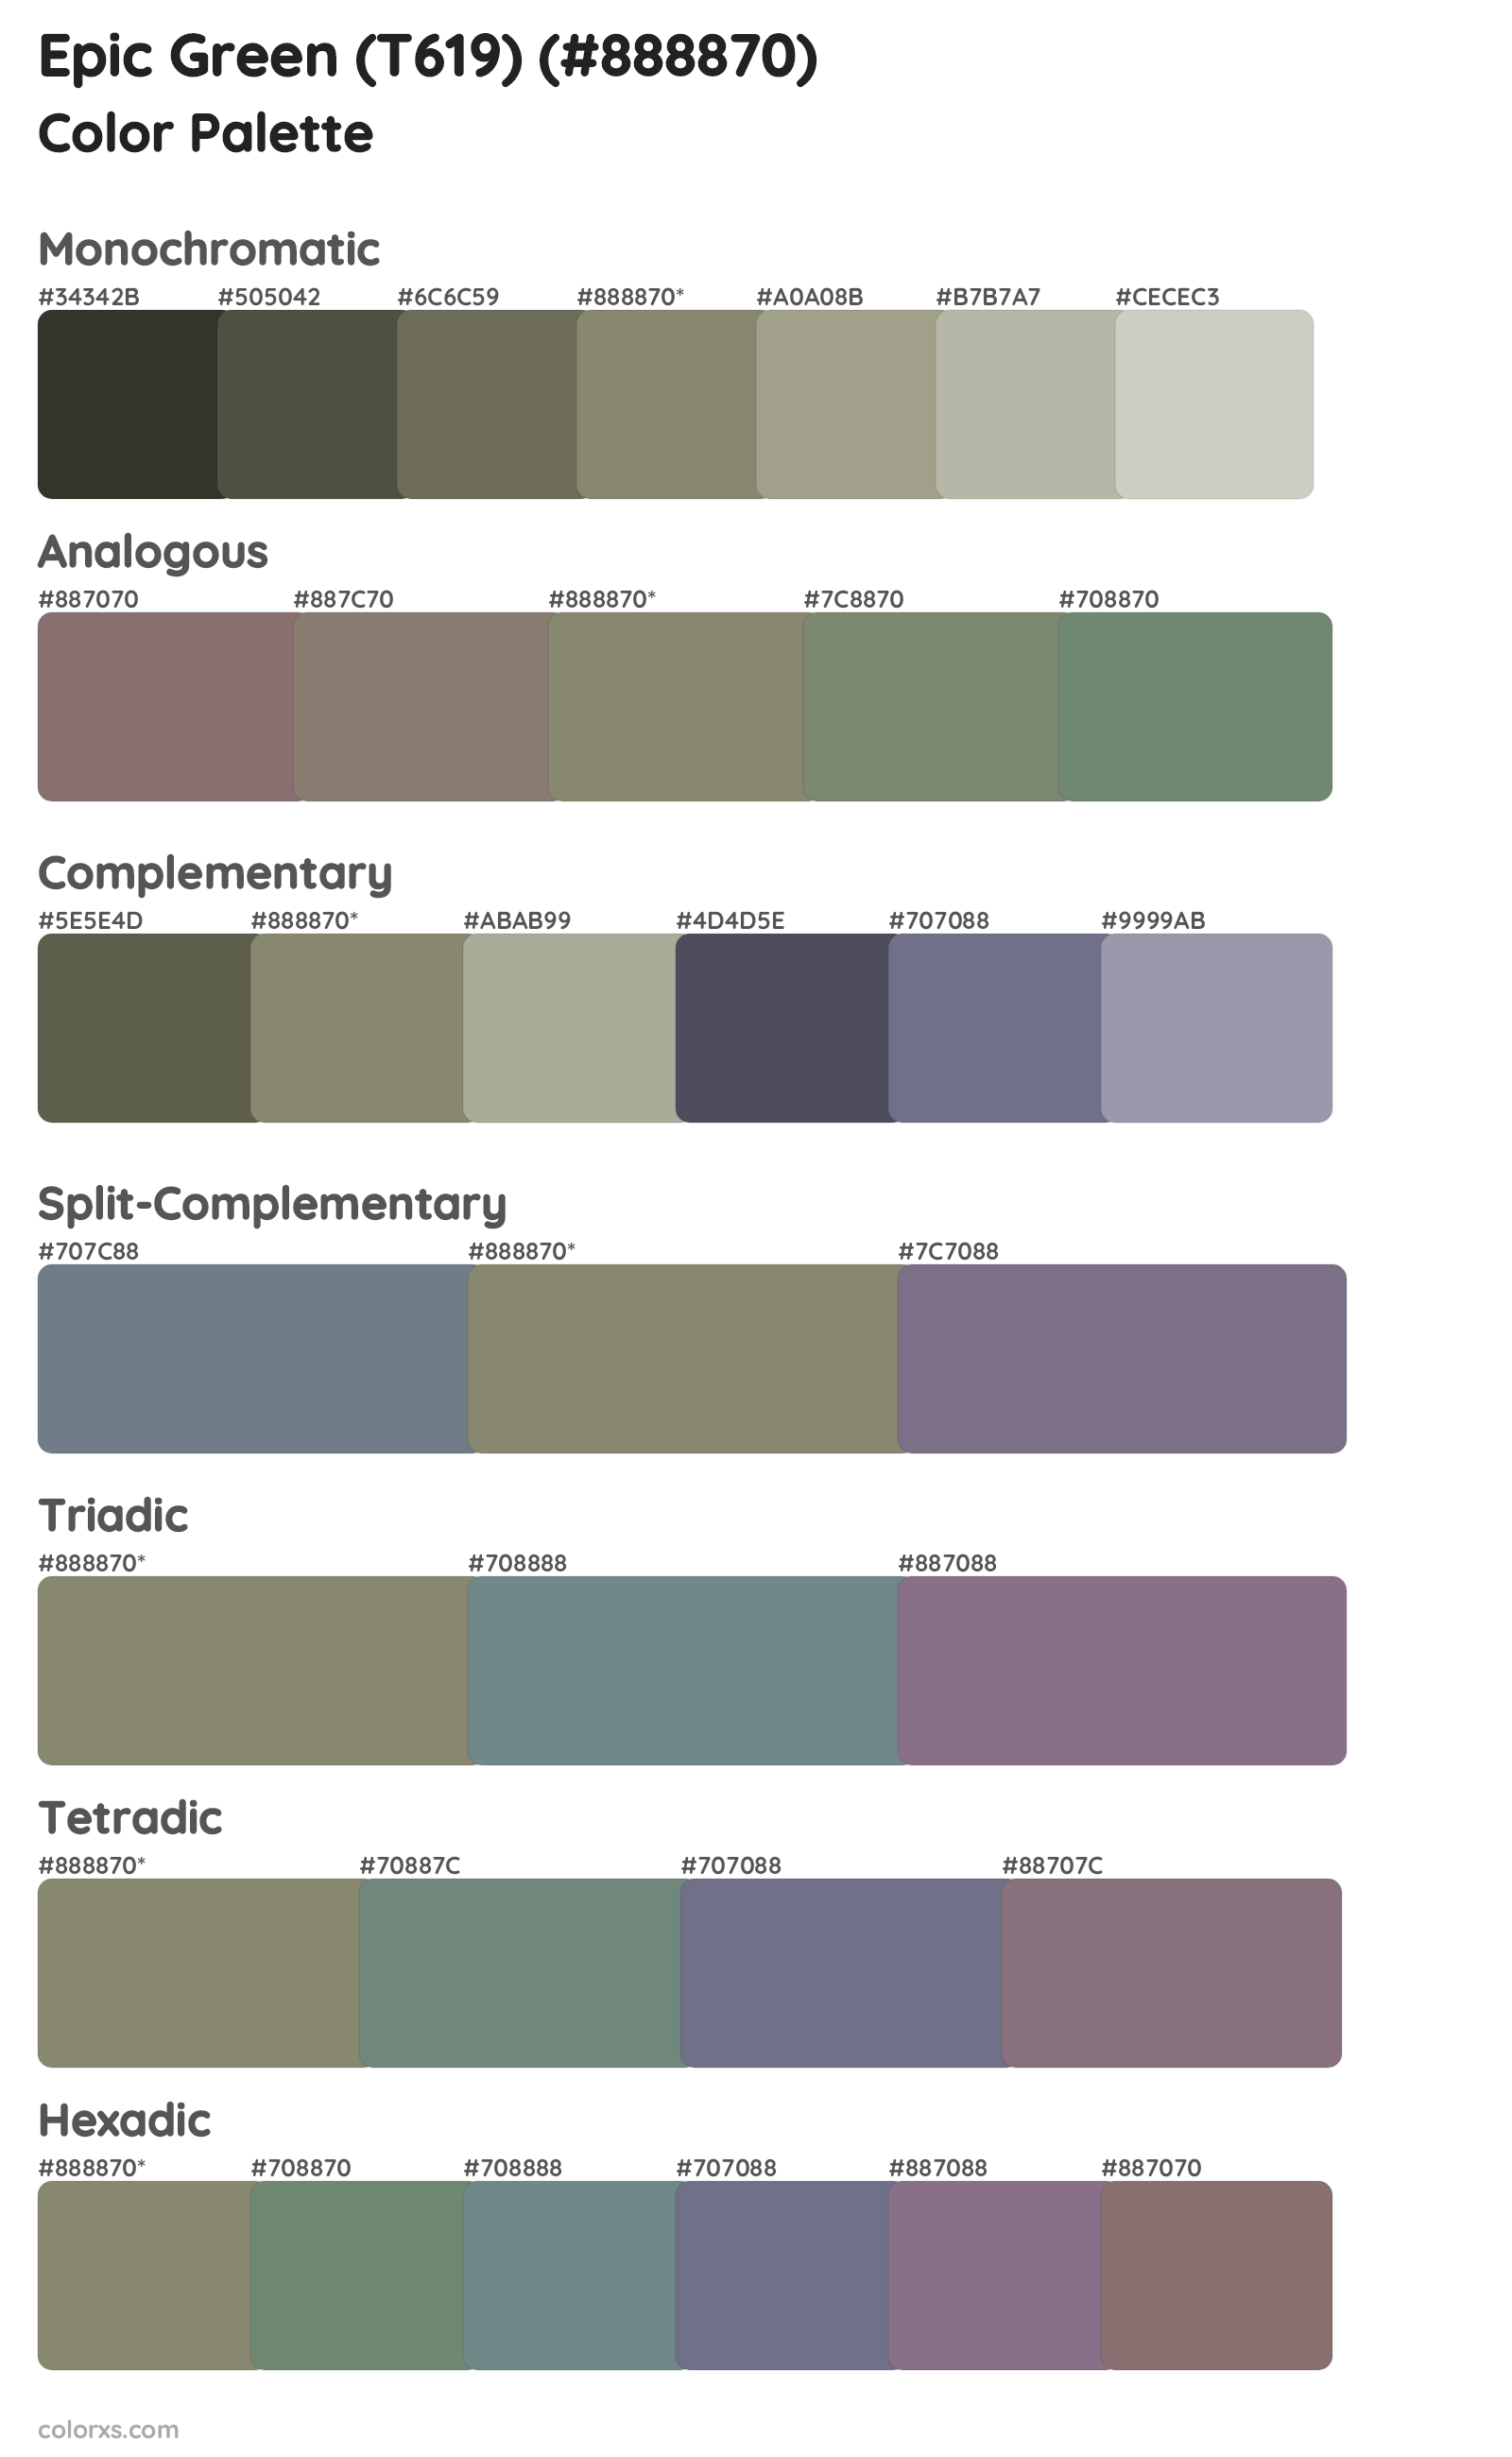 Epic Green (T619) Color Scheme Palettes